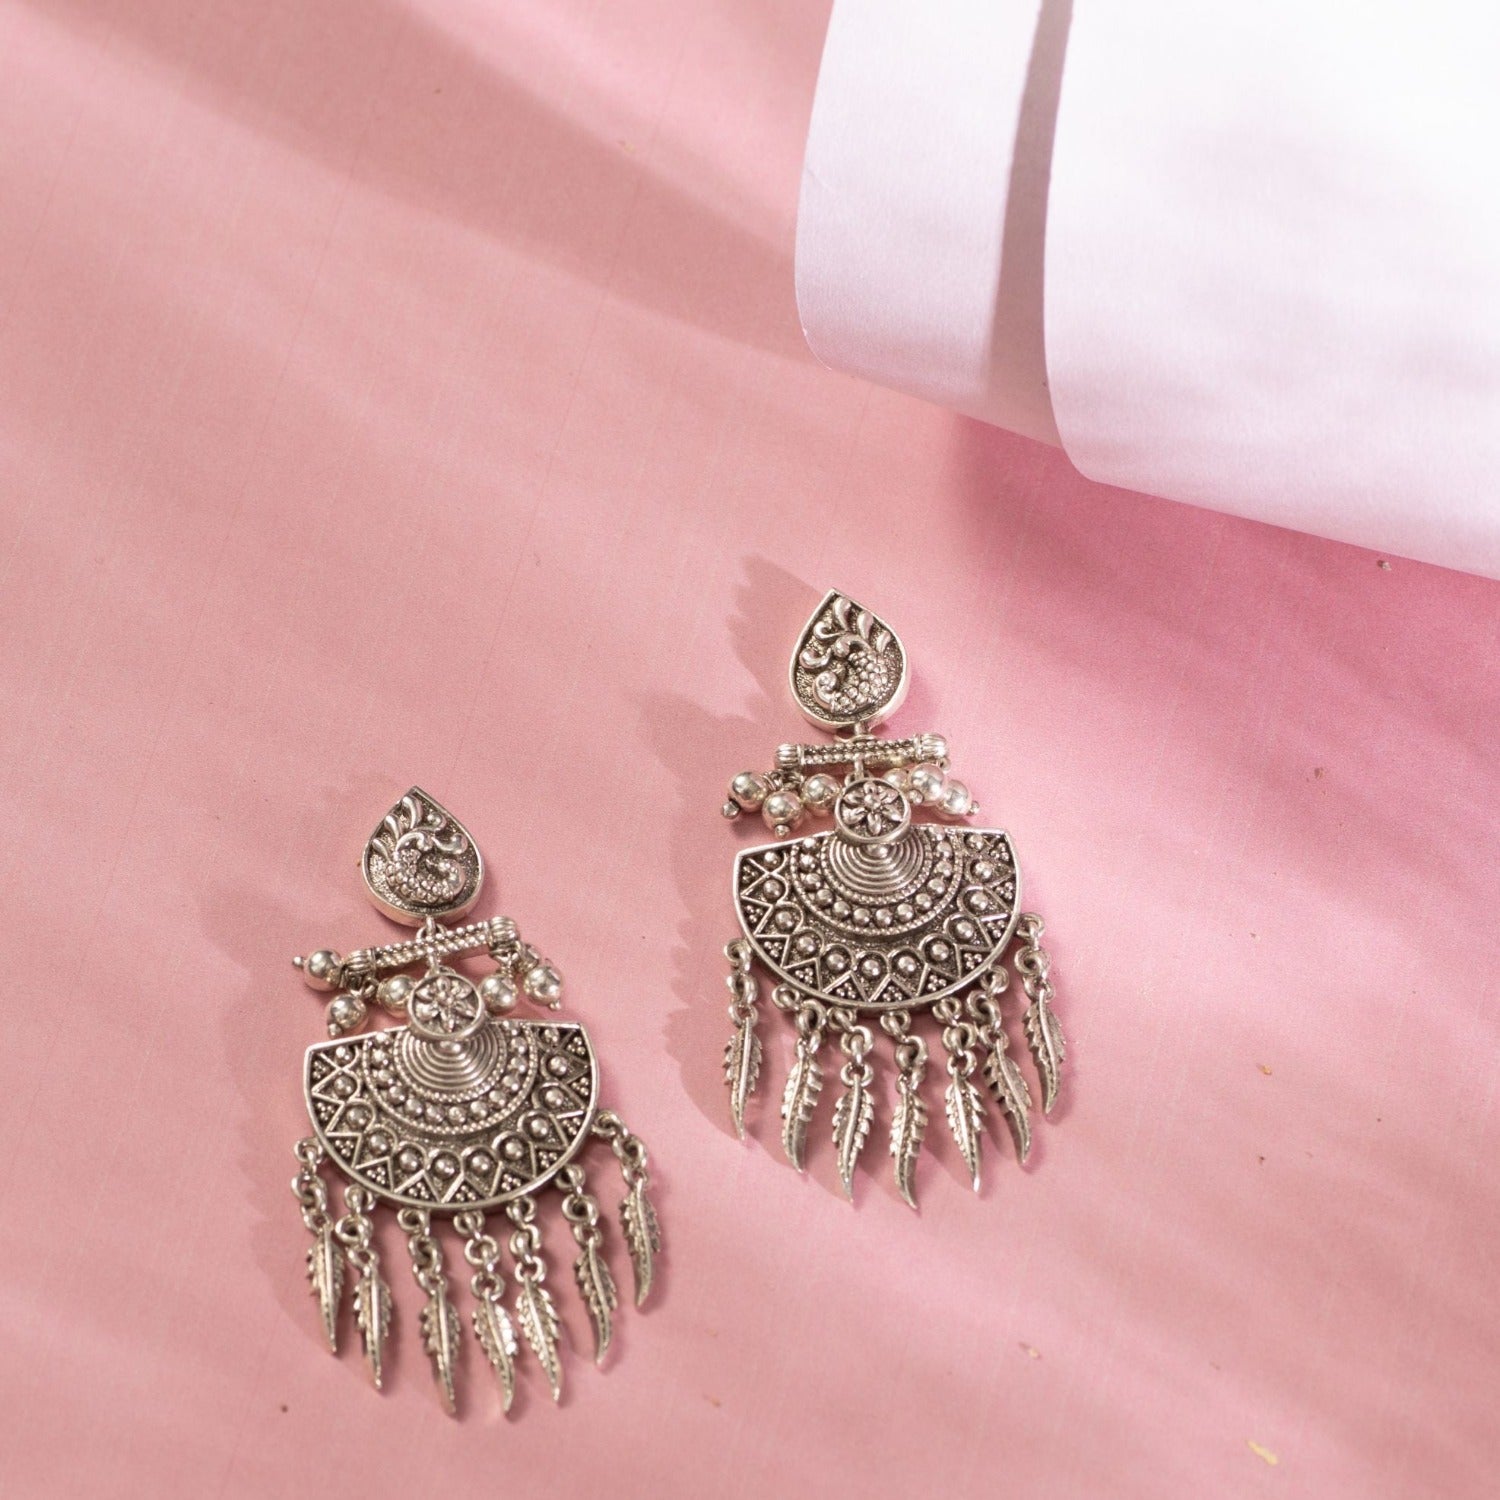 Lokaer 18K Gold Plated Dream Catcher Earrings Jewelry For Women Girls  Stainless Steel Leaves Dangle Earrings серьга E22211